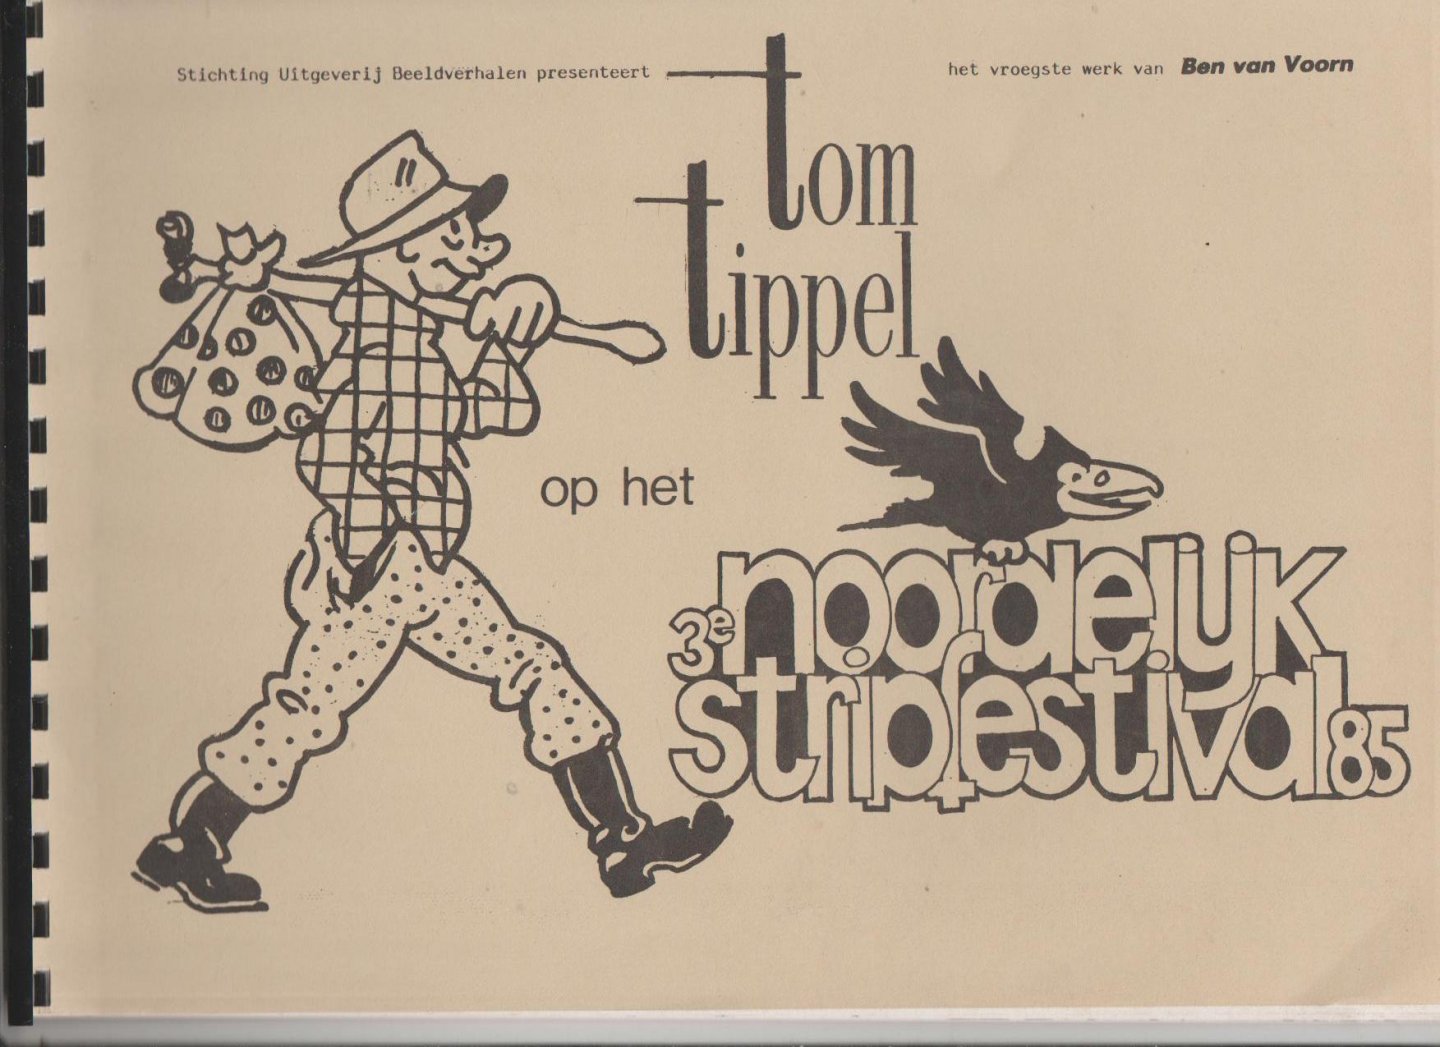 Voorn,Ben van - Tom Tippel op het 3e Noordelijk stripfestival 85